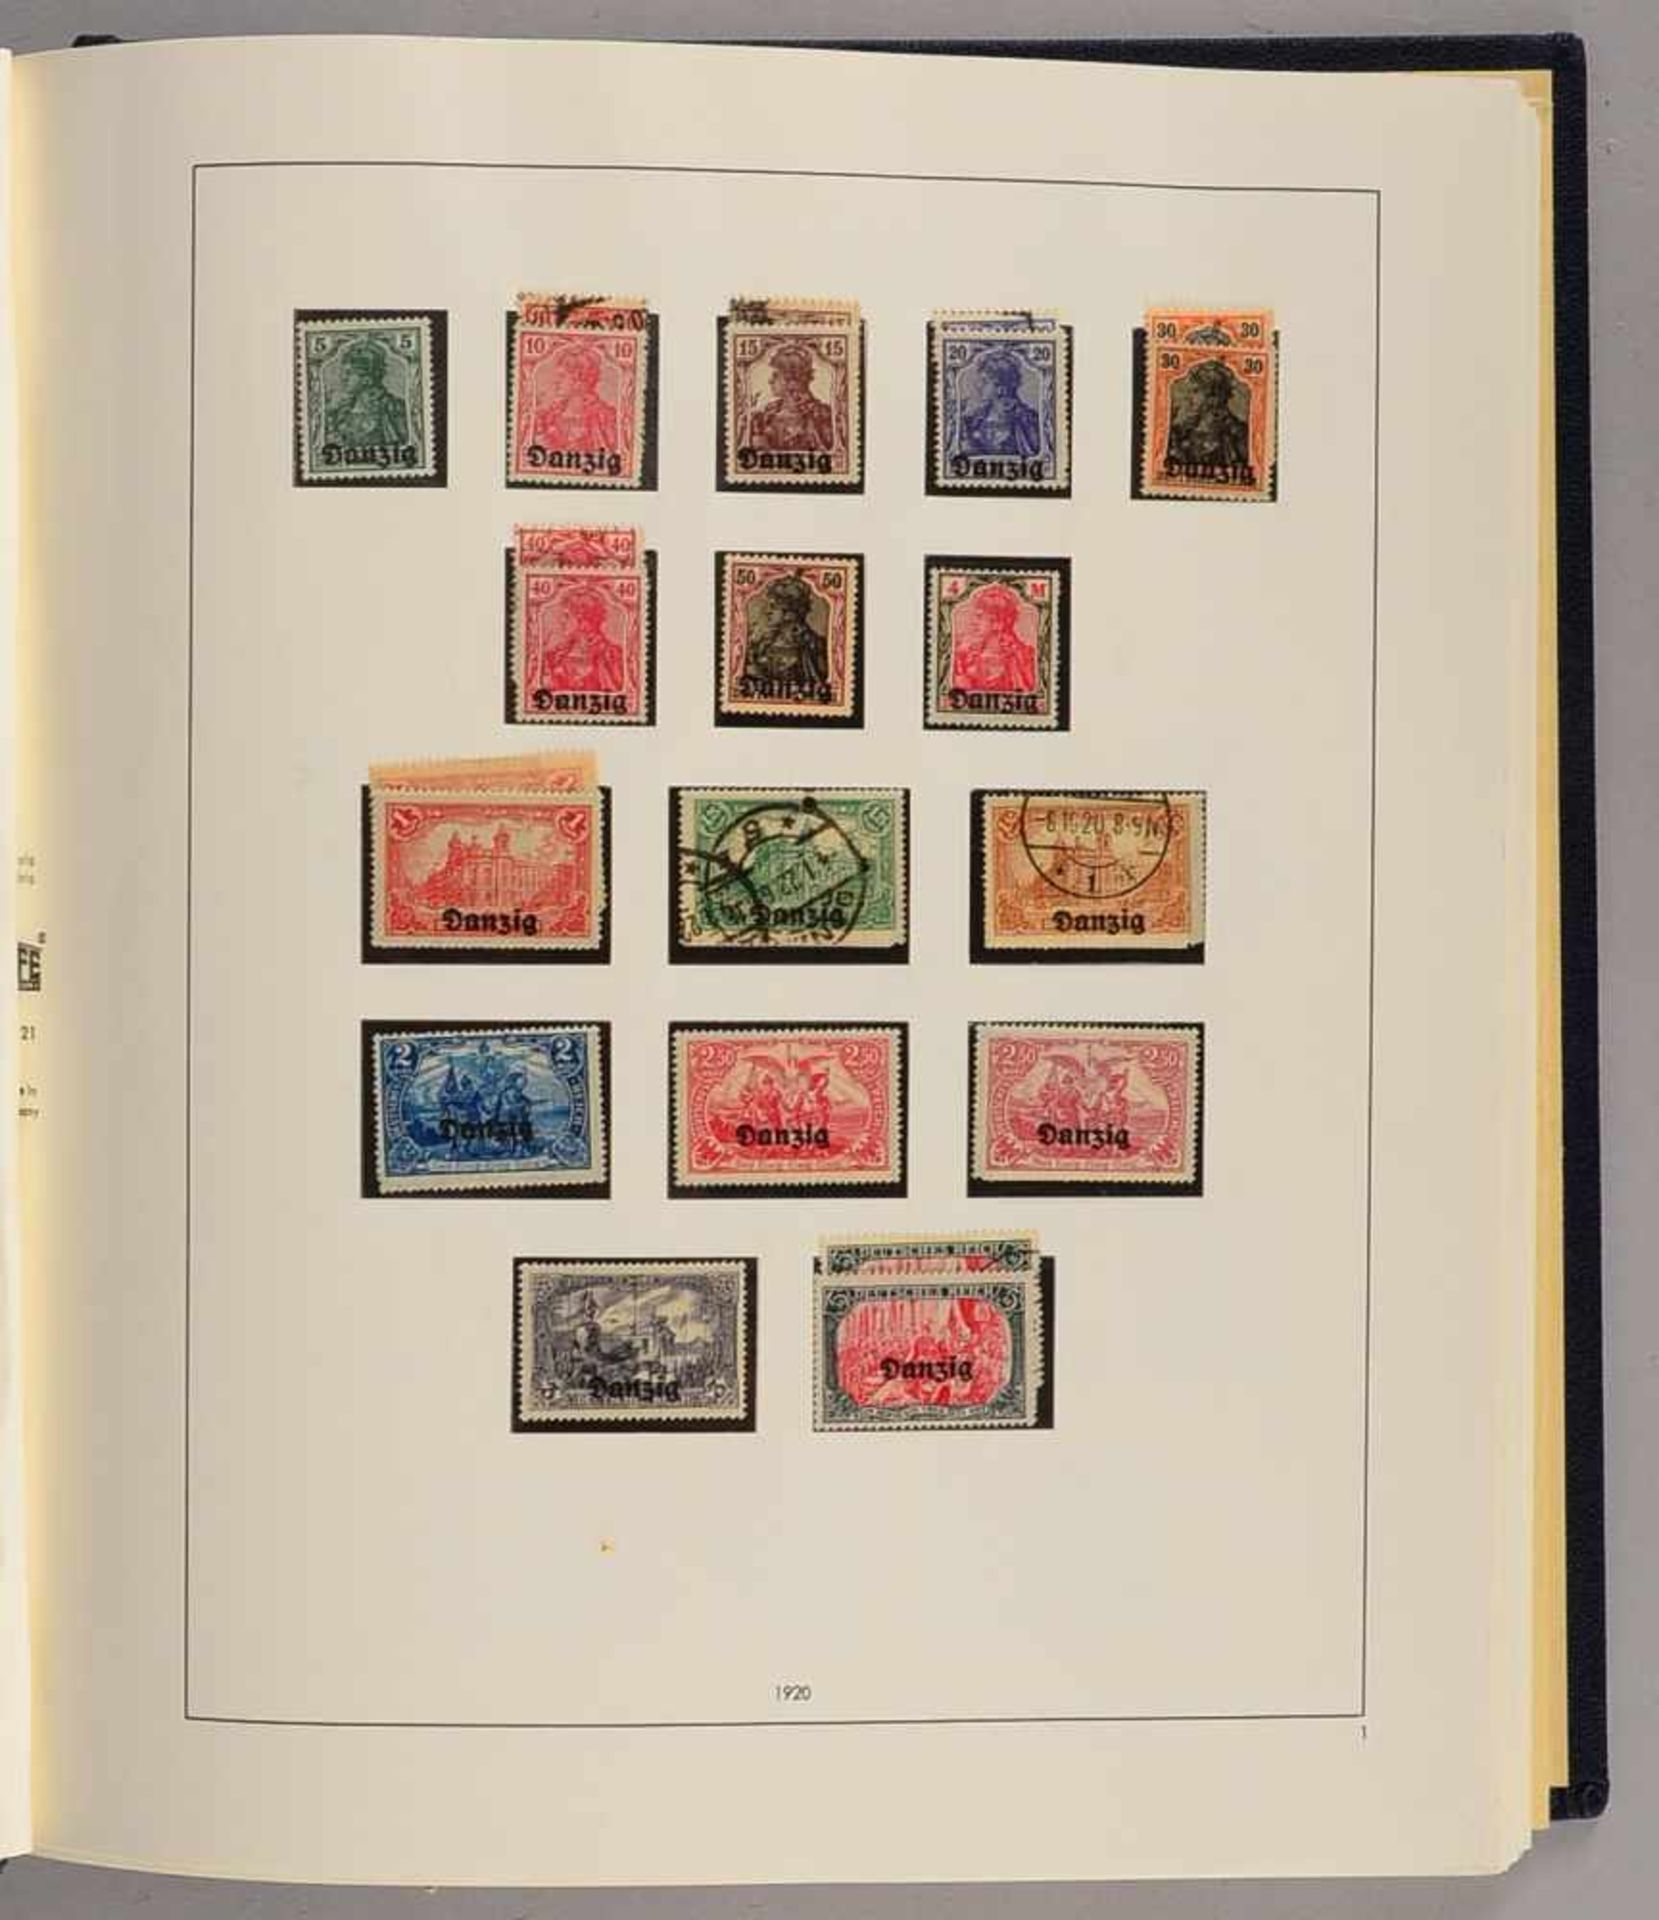 Briefmarken, 1920 - 1939: eine gut ausgebaute Sammlung der gesuchten Gebiete 'Danzig', 'Memel', '